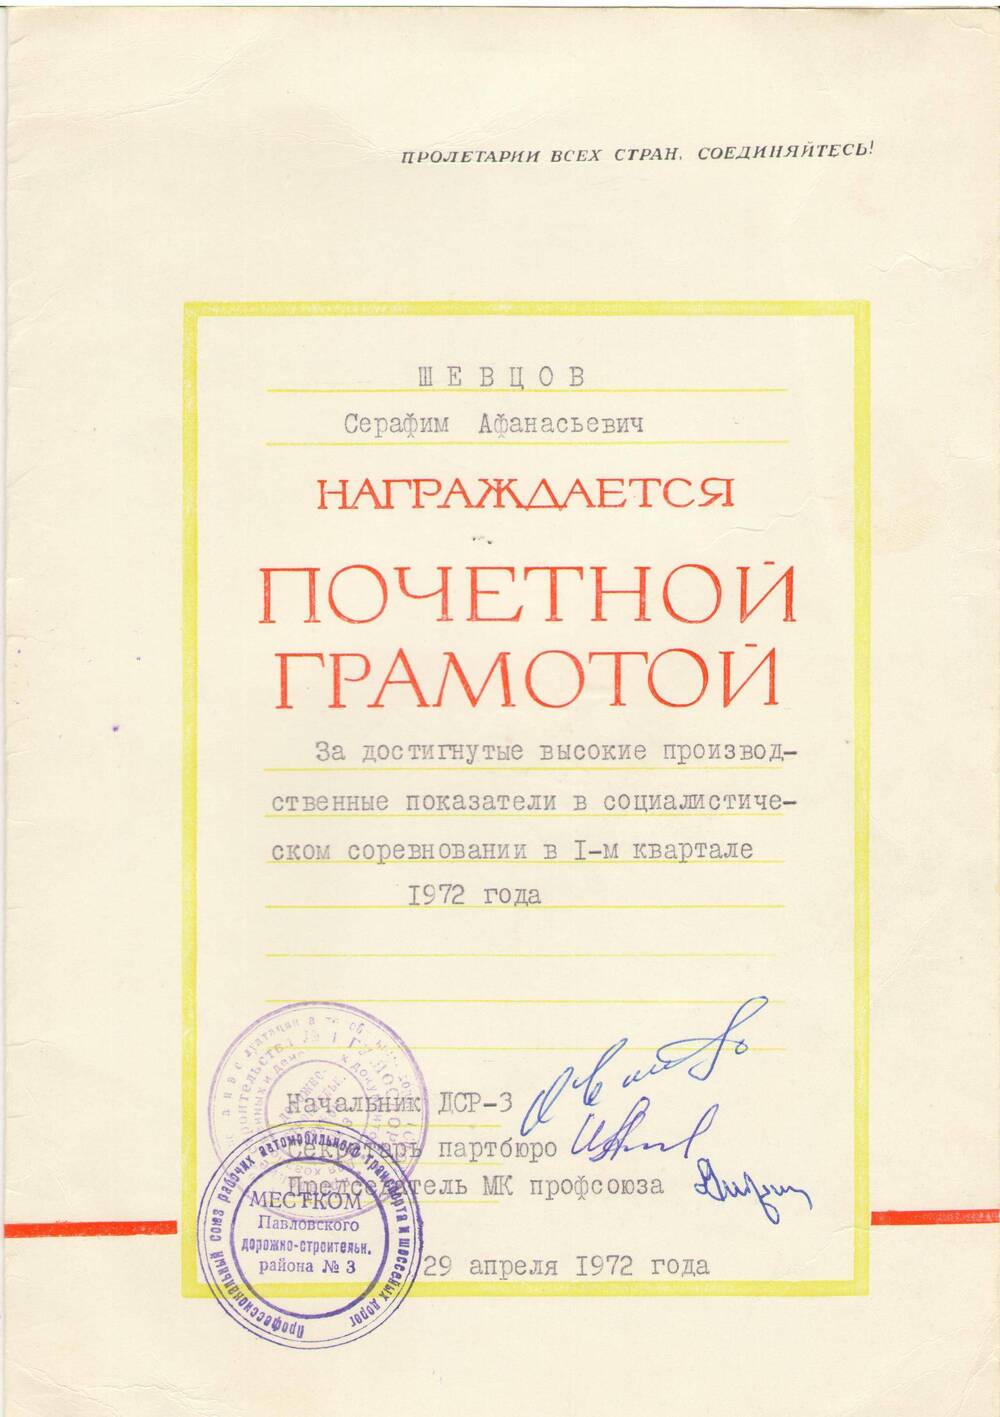 Почетная грамота Шевцову Серафиму Афанасьевичу за высокие производственные показатели  в соц соревновании 1 кв. 1972 г.